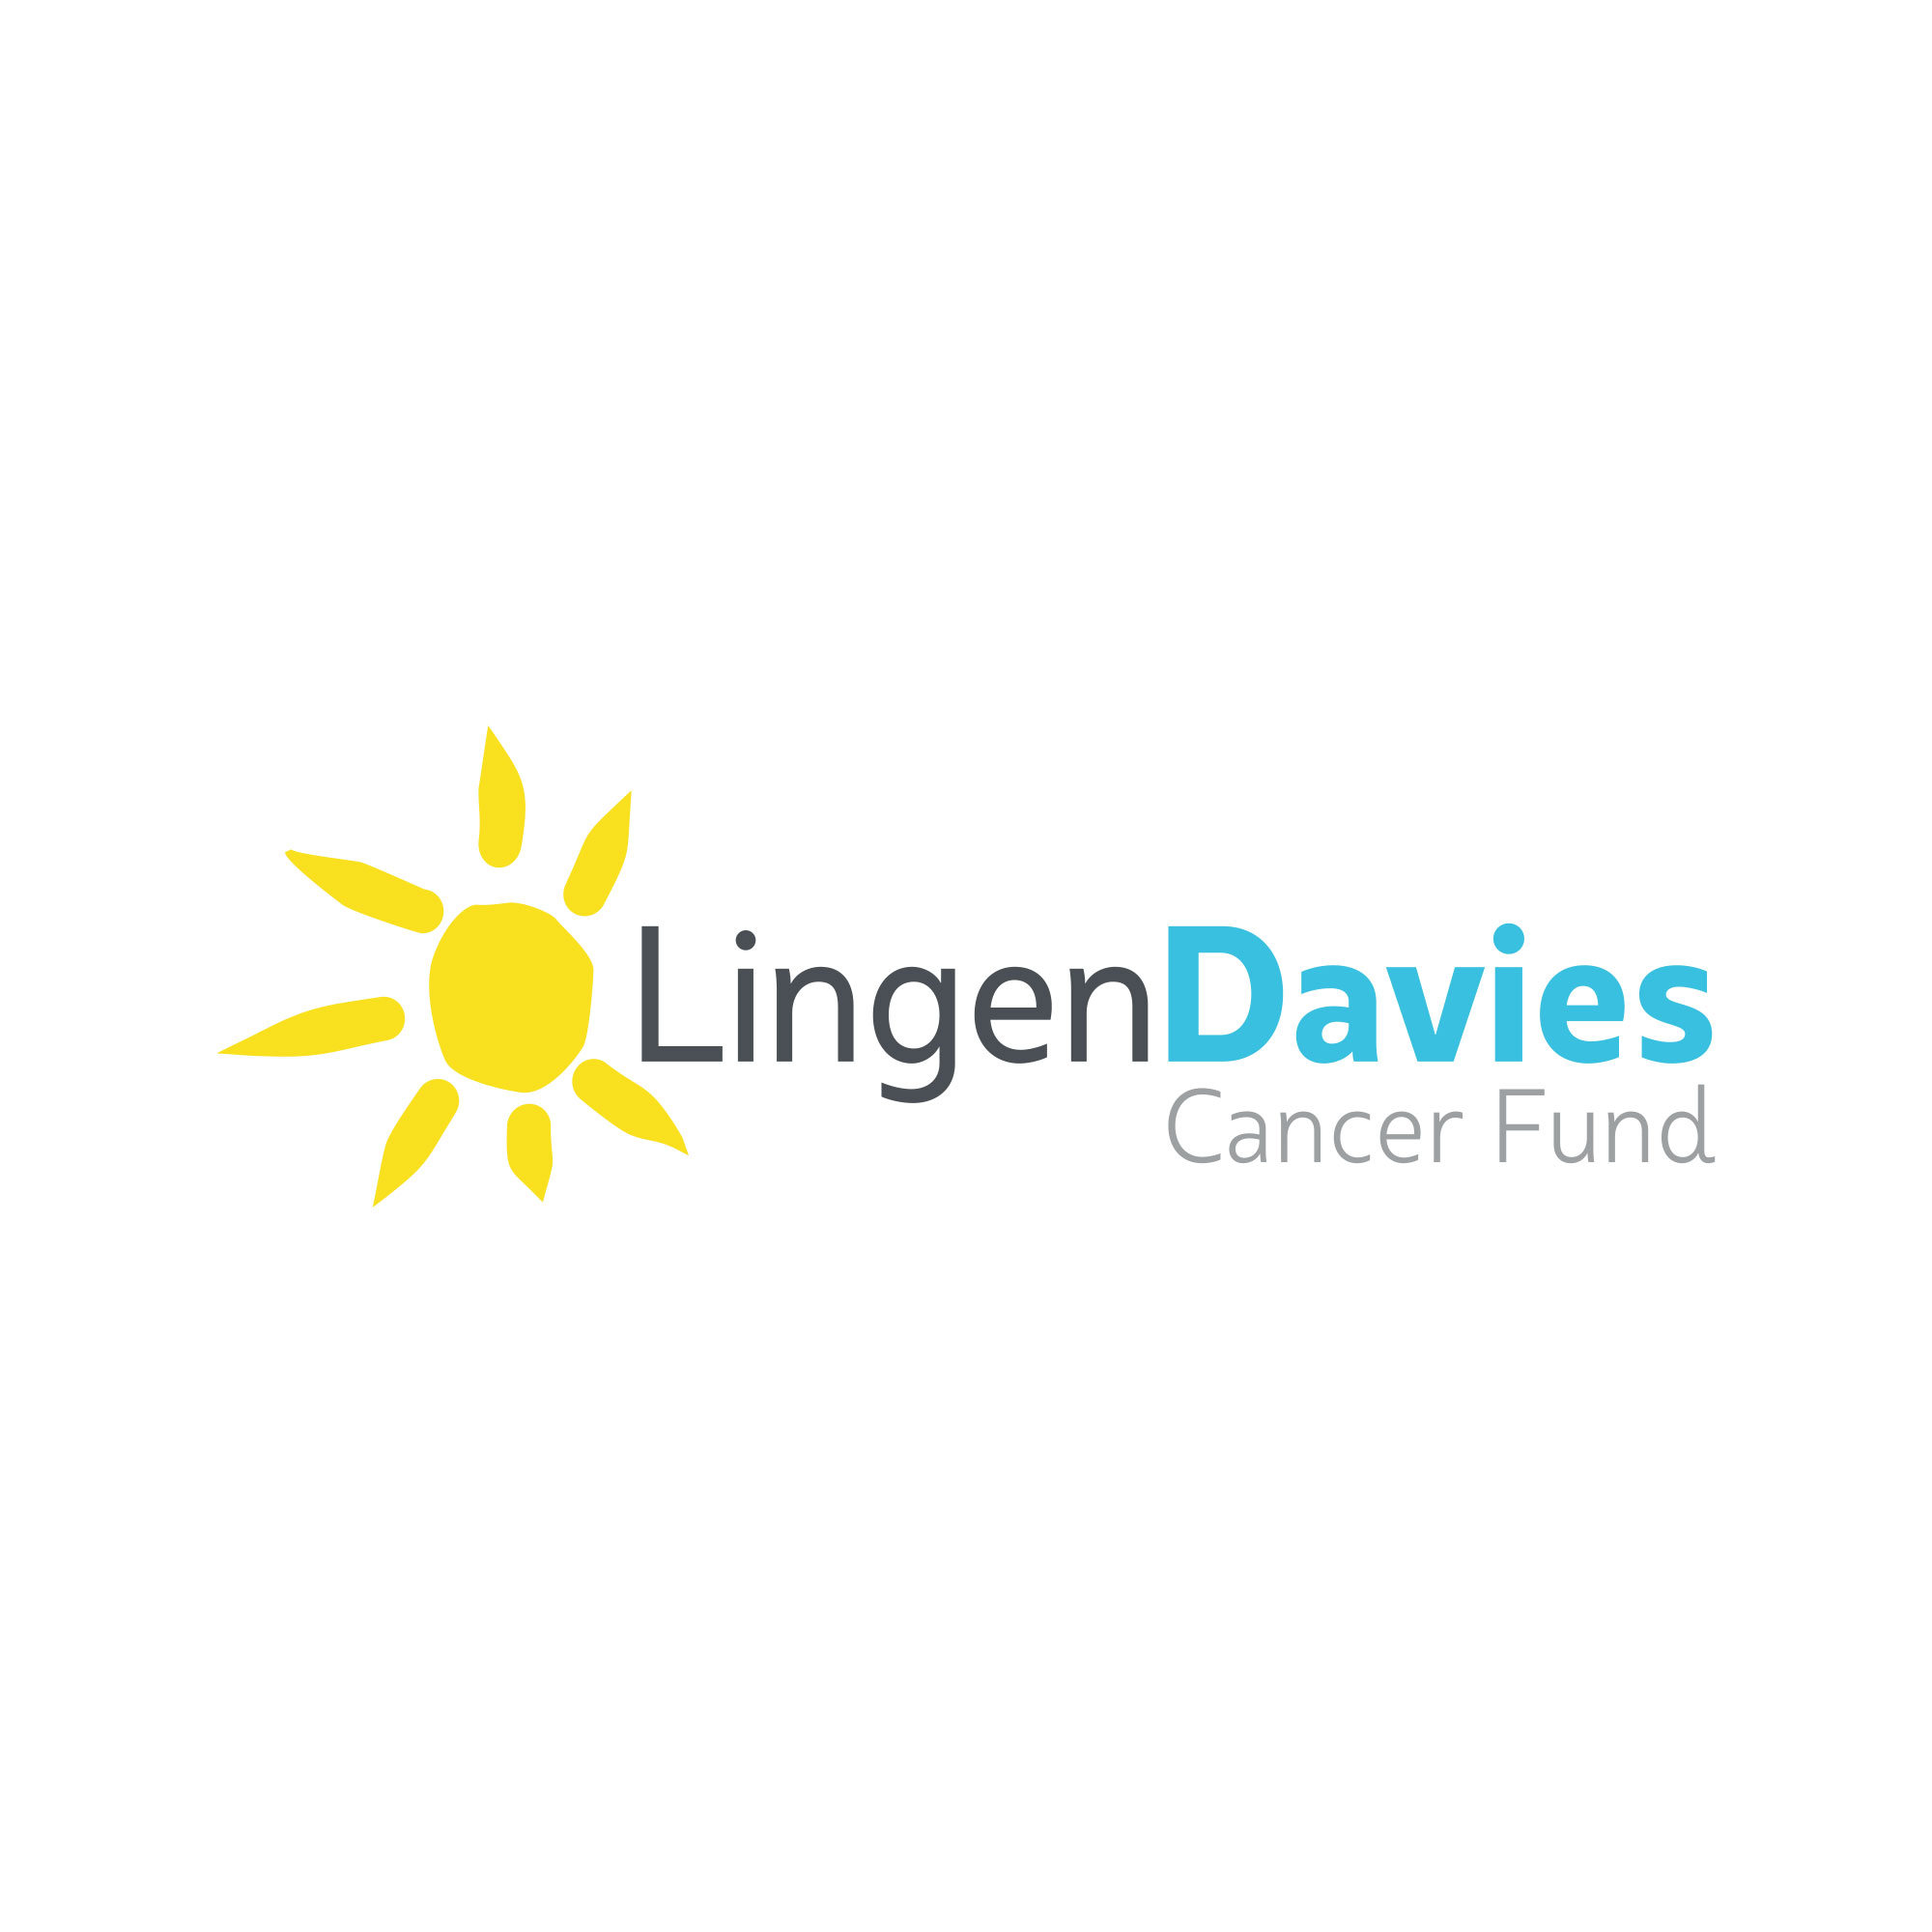 Lingen Davies Cancer Trust